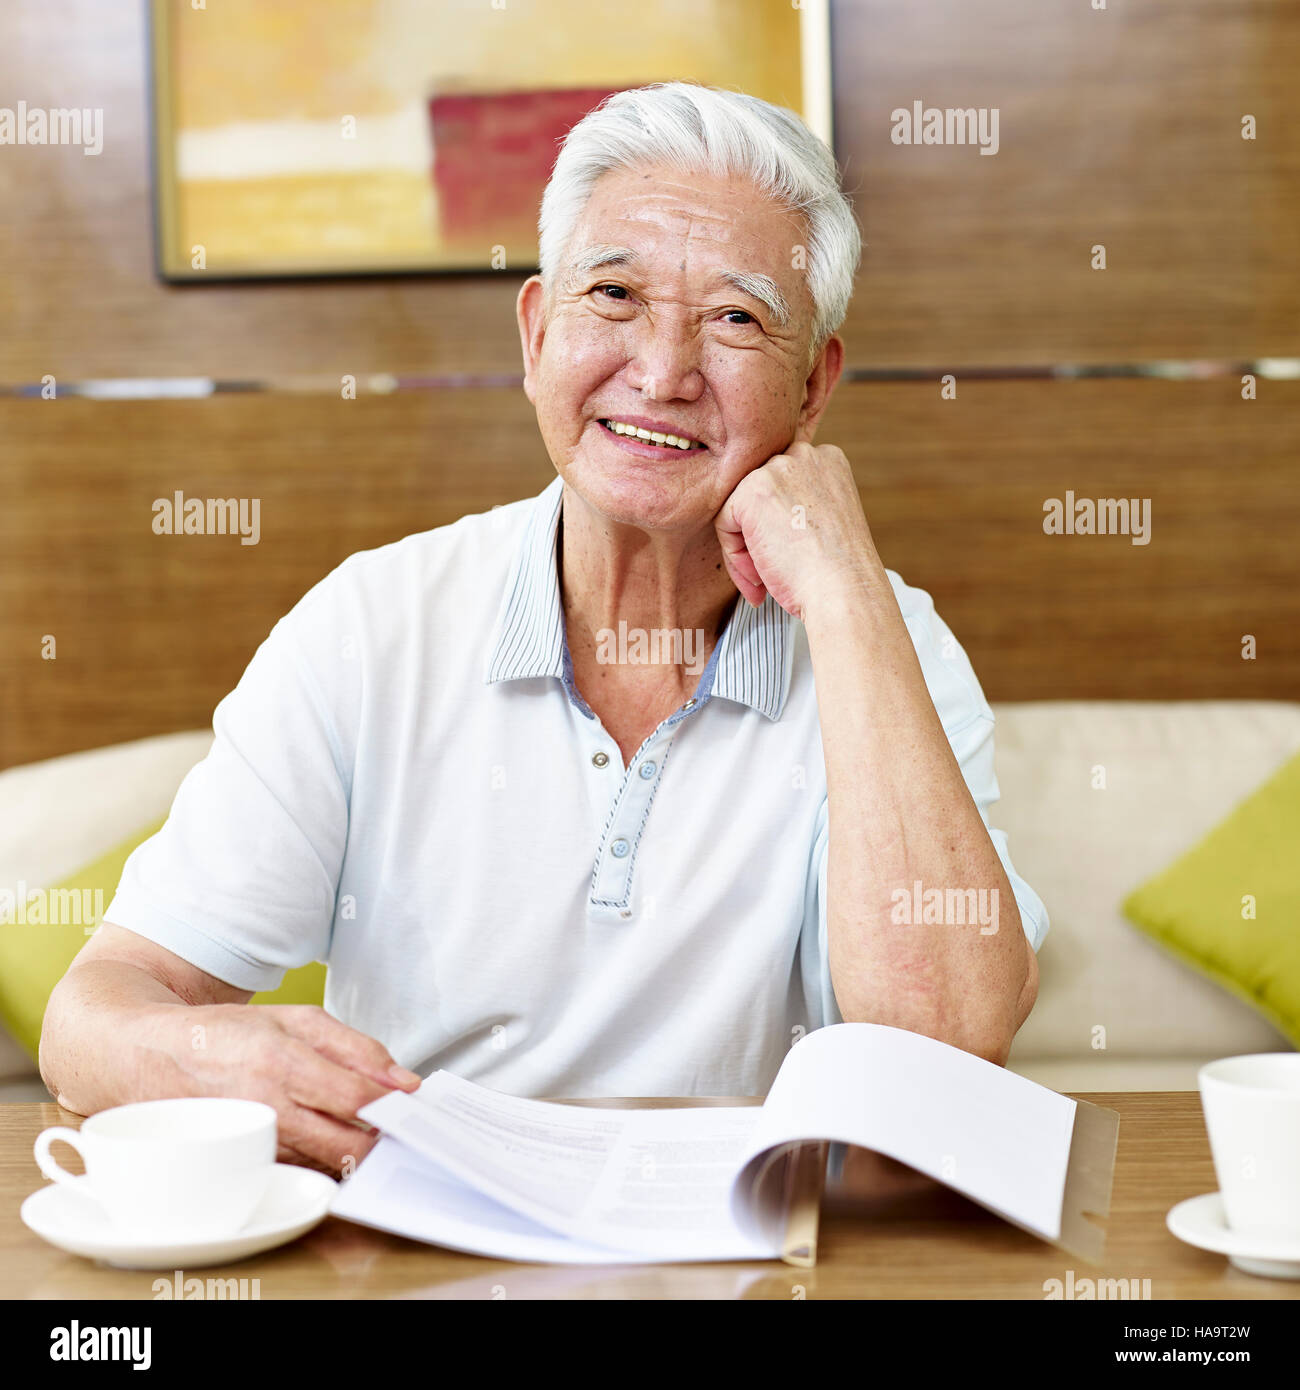 Senior asian man la lecture d'un livre ou document en salle d'étude Banque D'Images